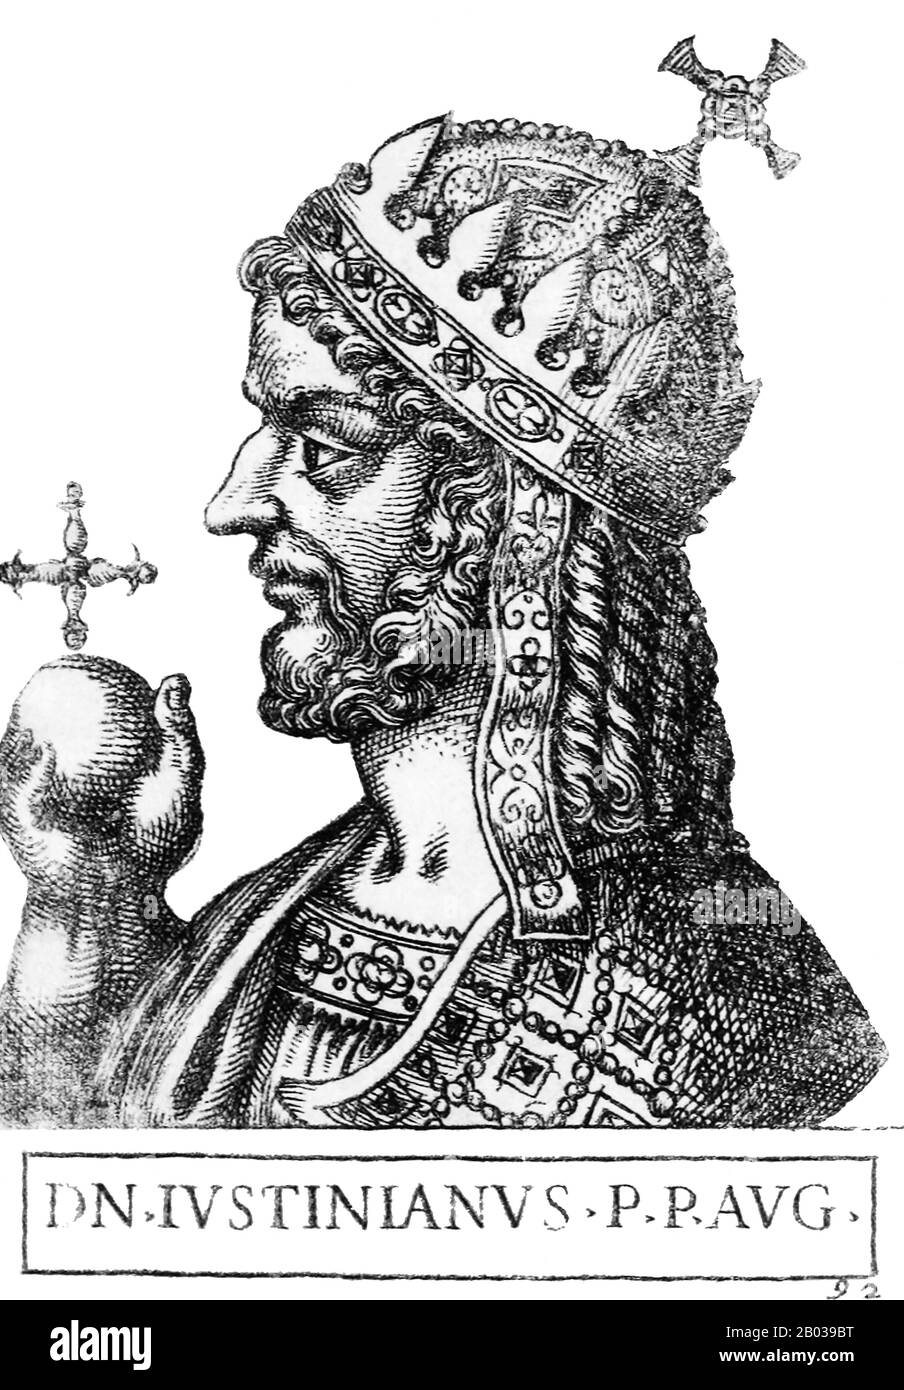 Justiniano I (482 - 565), también conocido como Justiniano el Grande o San Justiniano el Grande, era el sobrino del Emperador Justin I, originalmente nacido de una familia campesina en Tauresium. Justin, antes de ser emperador, adoptó Justiniano y lo crió en Constantinopla. Justiniano sirvió en la Guardia Imperial, los Excubitos, como lo hizo su tío, y fue convertido en emperador asociado en 527 antes de convertirse en único emperador cuando Justin murió en el mismo año. Justiniano era ambicioso e inteligente, y buscó revivir la grandeza del imperio, planeando la reconquista de la mitad occidental del Imperio Romano en lo que era Foto de stock